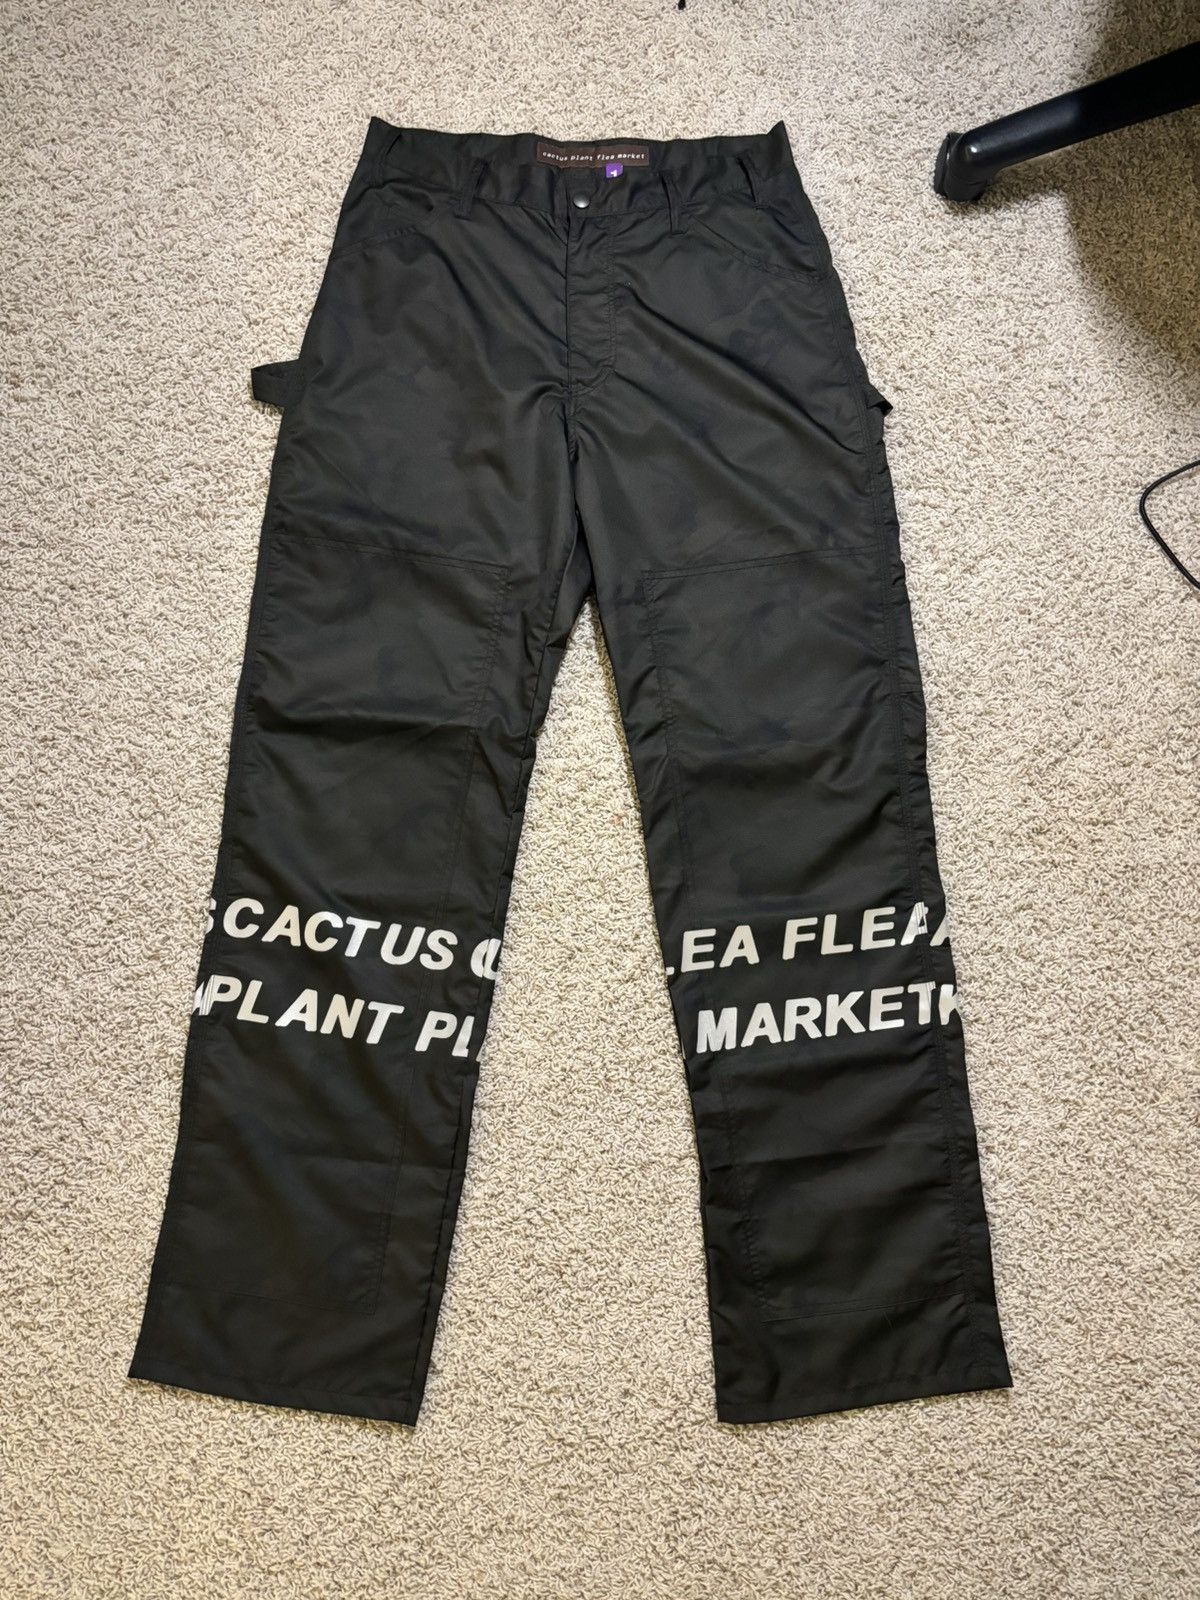 Cactus Plant Flea Market Fleece Lined Pants 34W x 32L